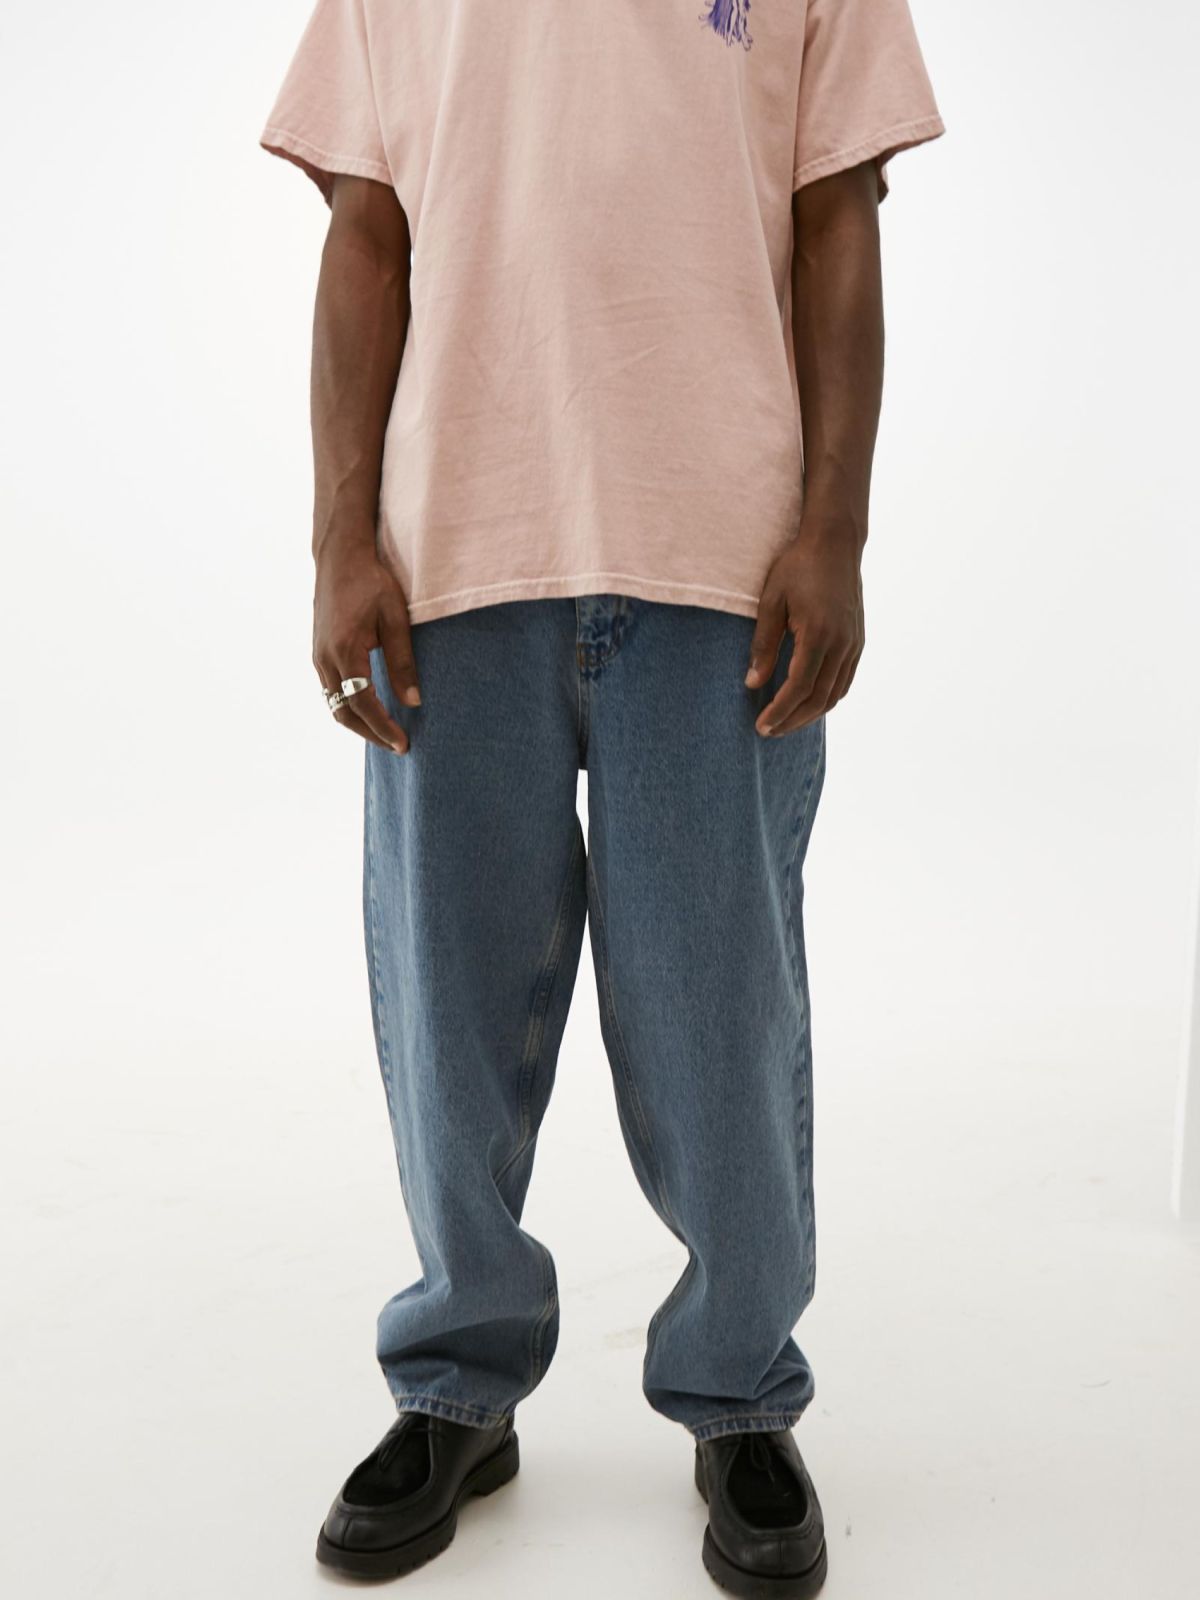  ג'ינס בגזרה רחבה של URBAN OUTFITTERS